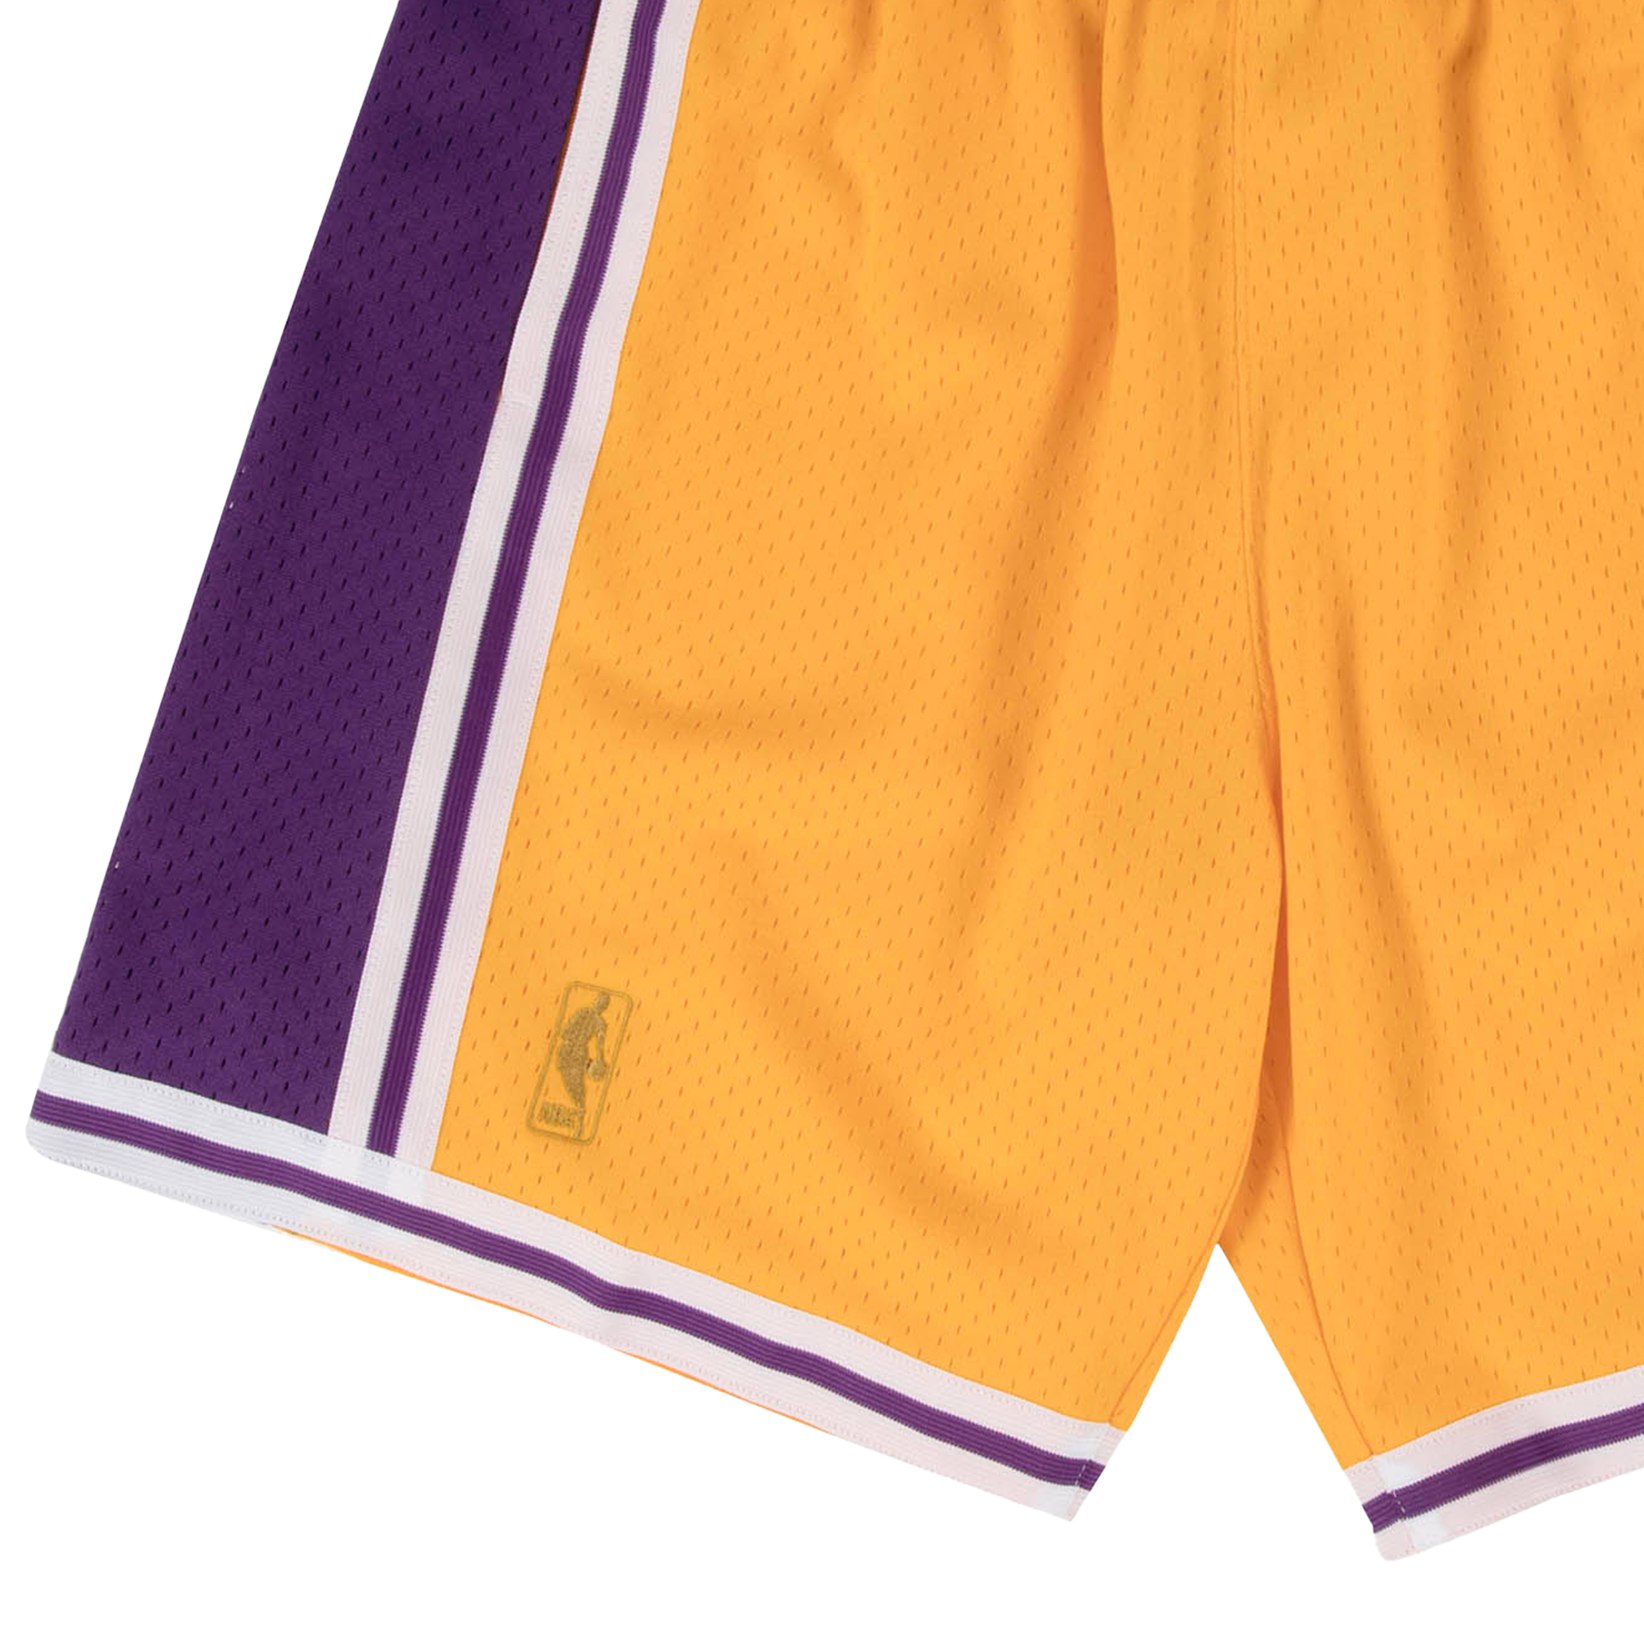 湖人队96-97赛季 SW版 复古篮球裤 男 运动短裤 NBA-Mitchellness - 图3